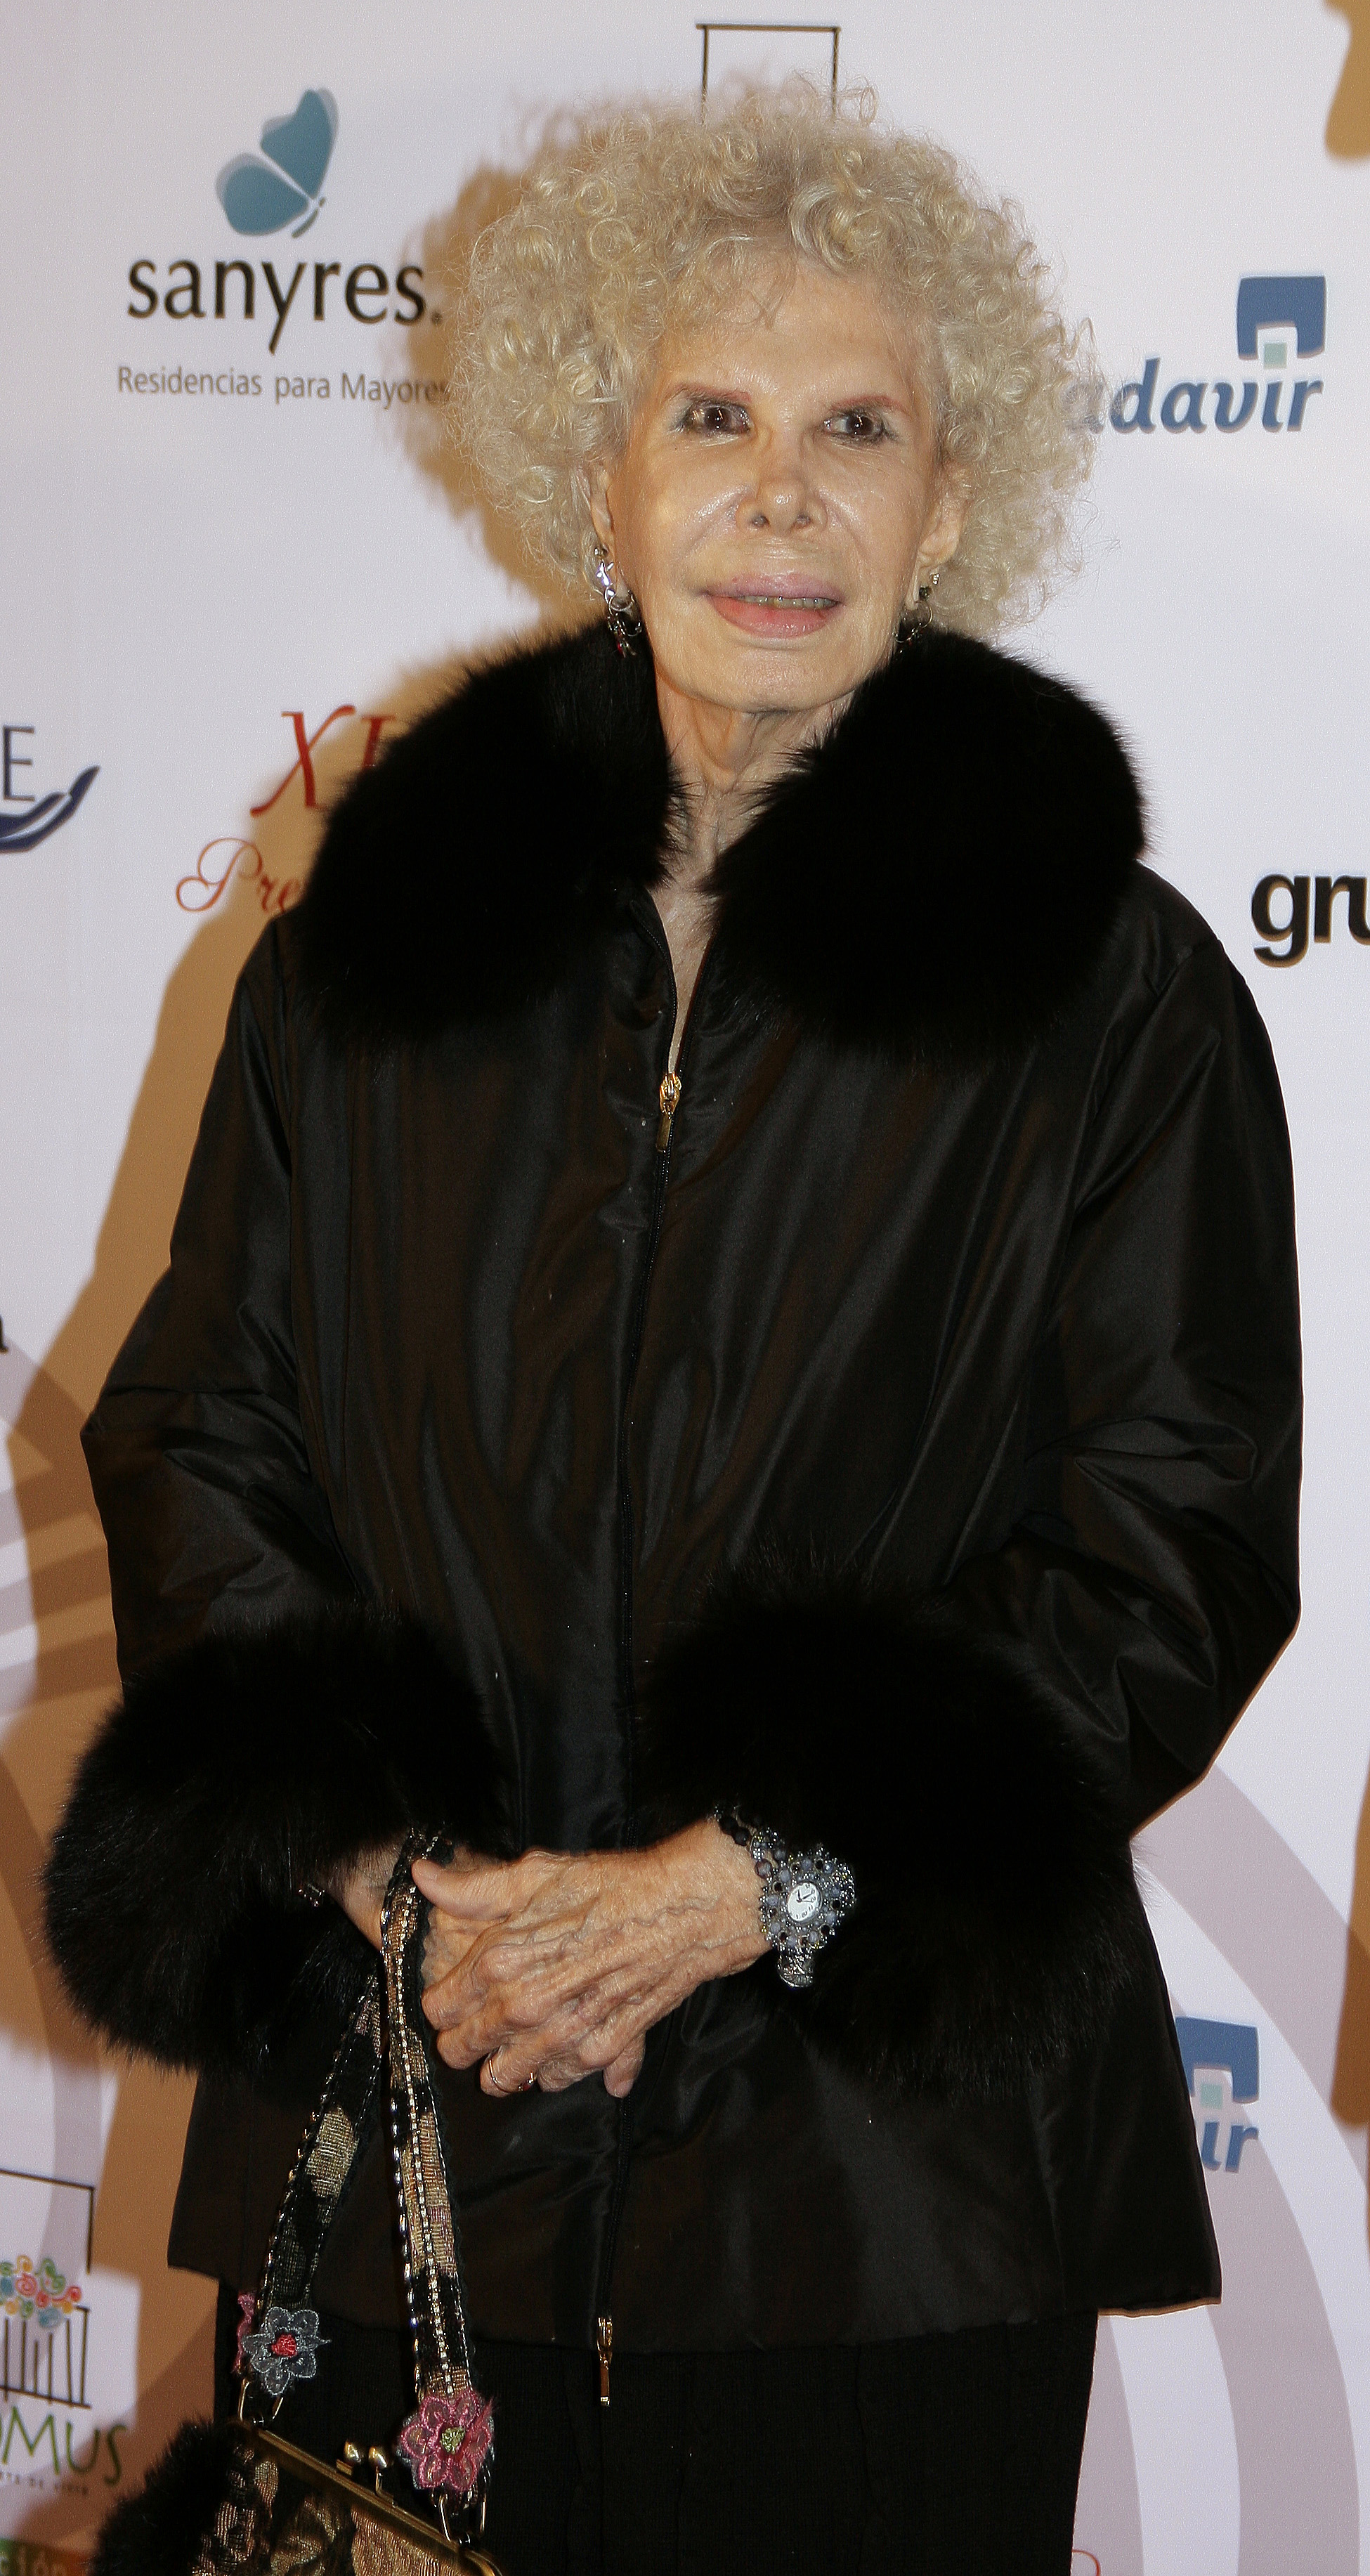 La duchesse d'Alba, Maria del Rosario Cayetana Fitz-James Stuart, lors de la remise des prix Jubilo à Madrid, Espagne, le 15 décembre 2009 | Source : Getty Images